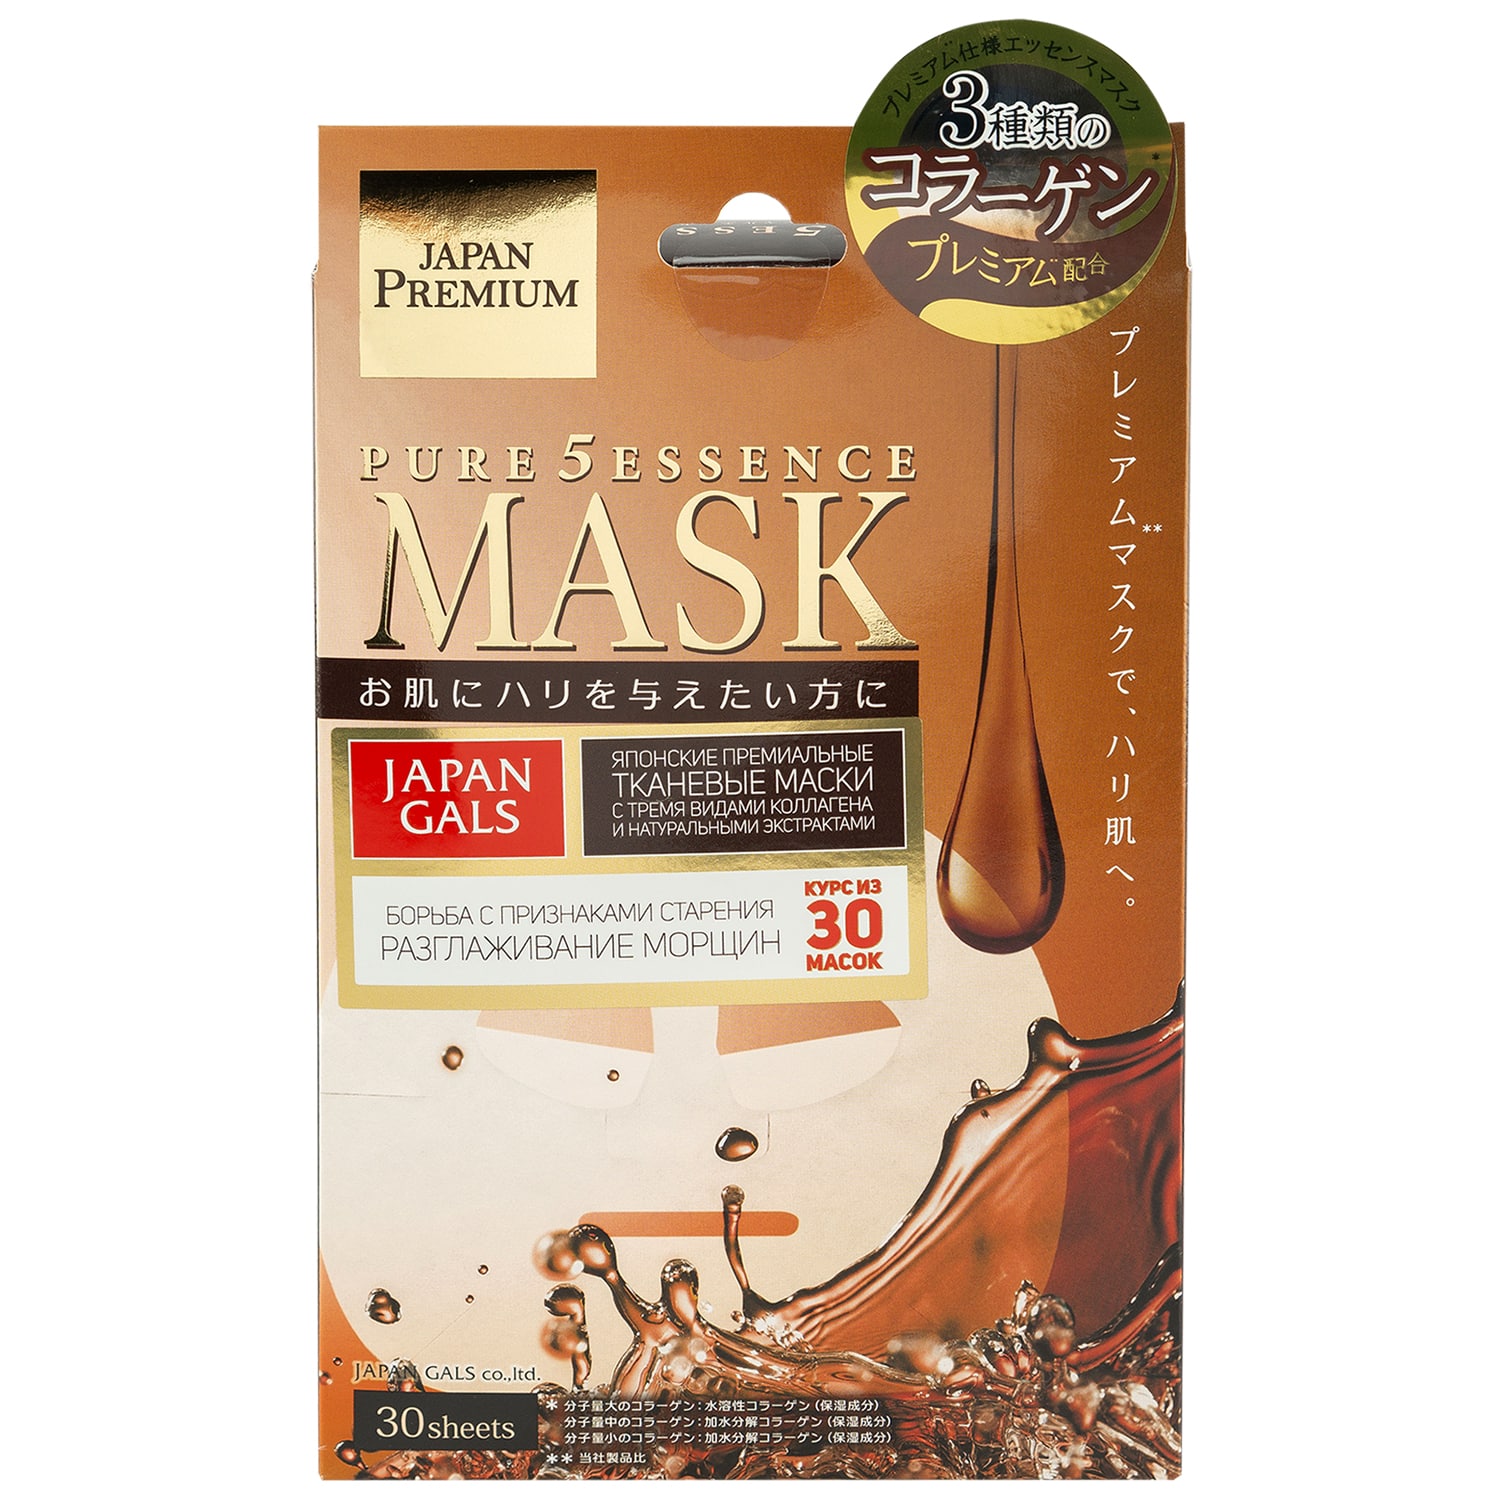 Japan Gals Маска для лица c тремя видами коллагена Essence Premium, 30 шт (Japan Gals, Pure5) маска для лица c тремя видами плаценты 30 шт pure5 essence premium